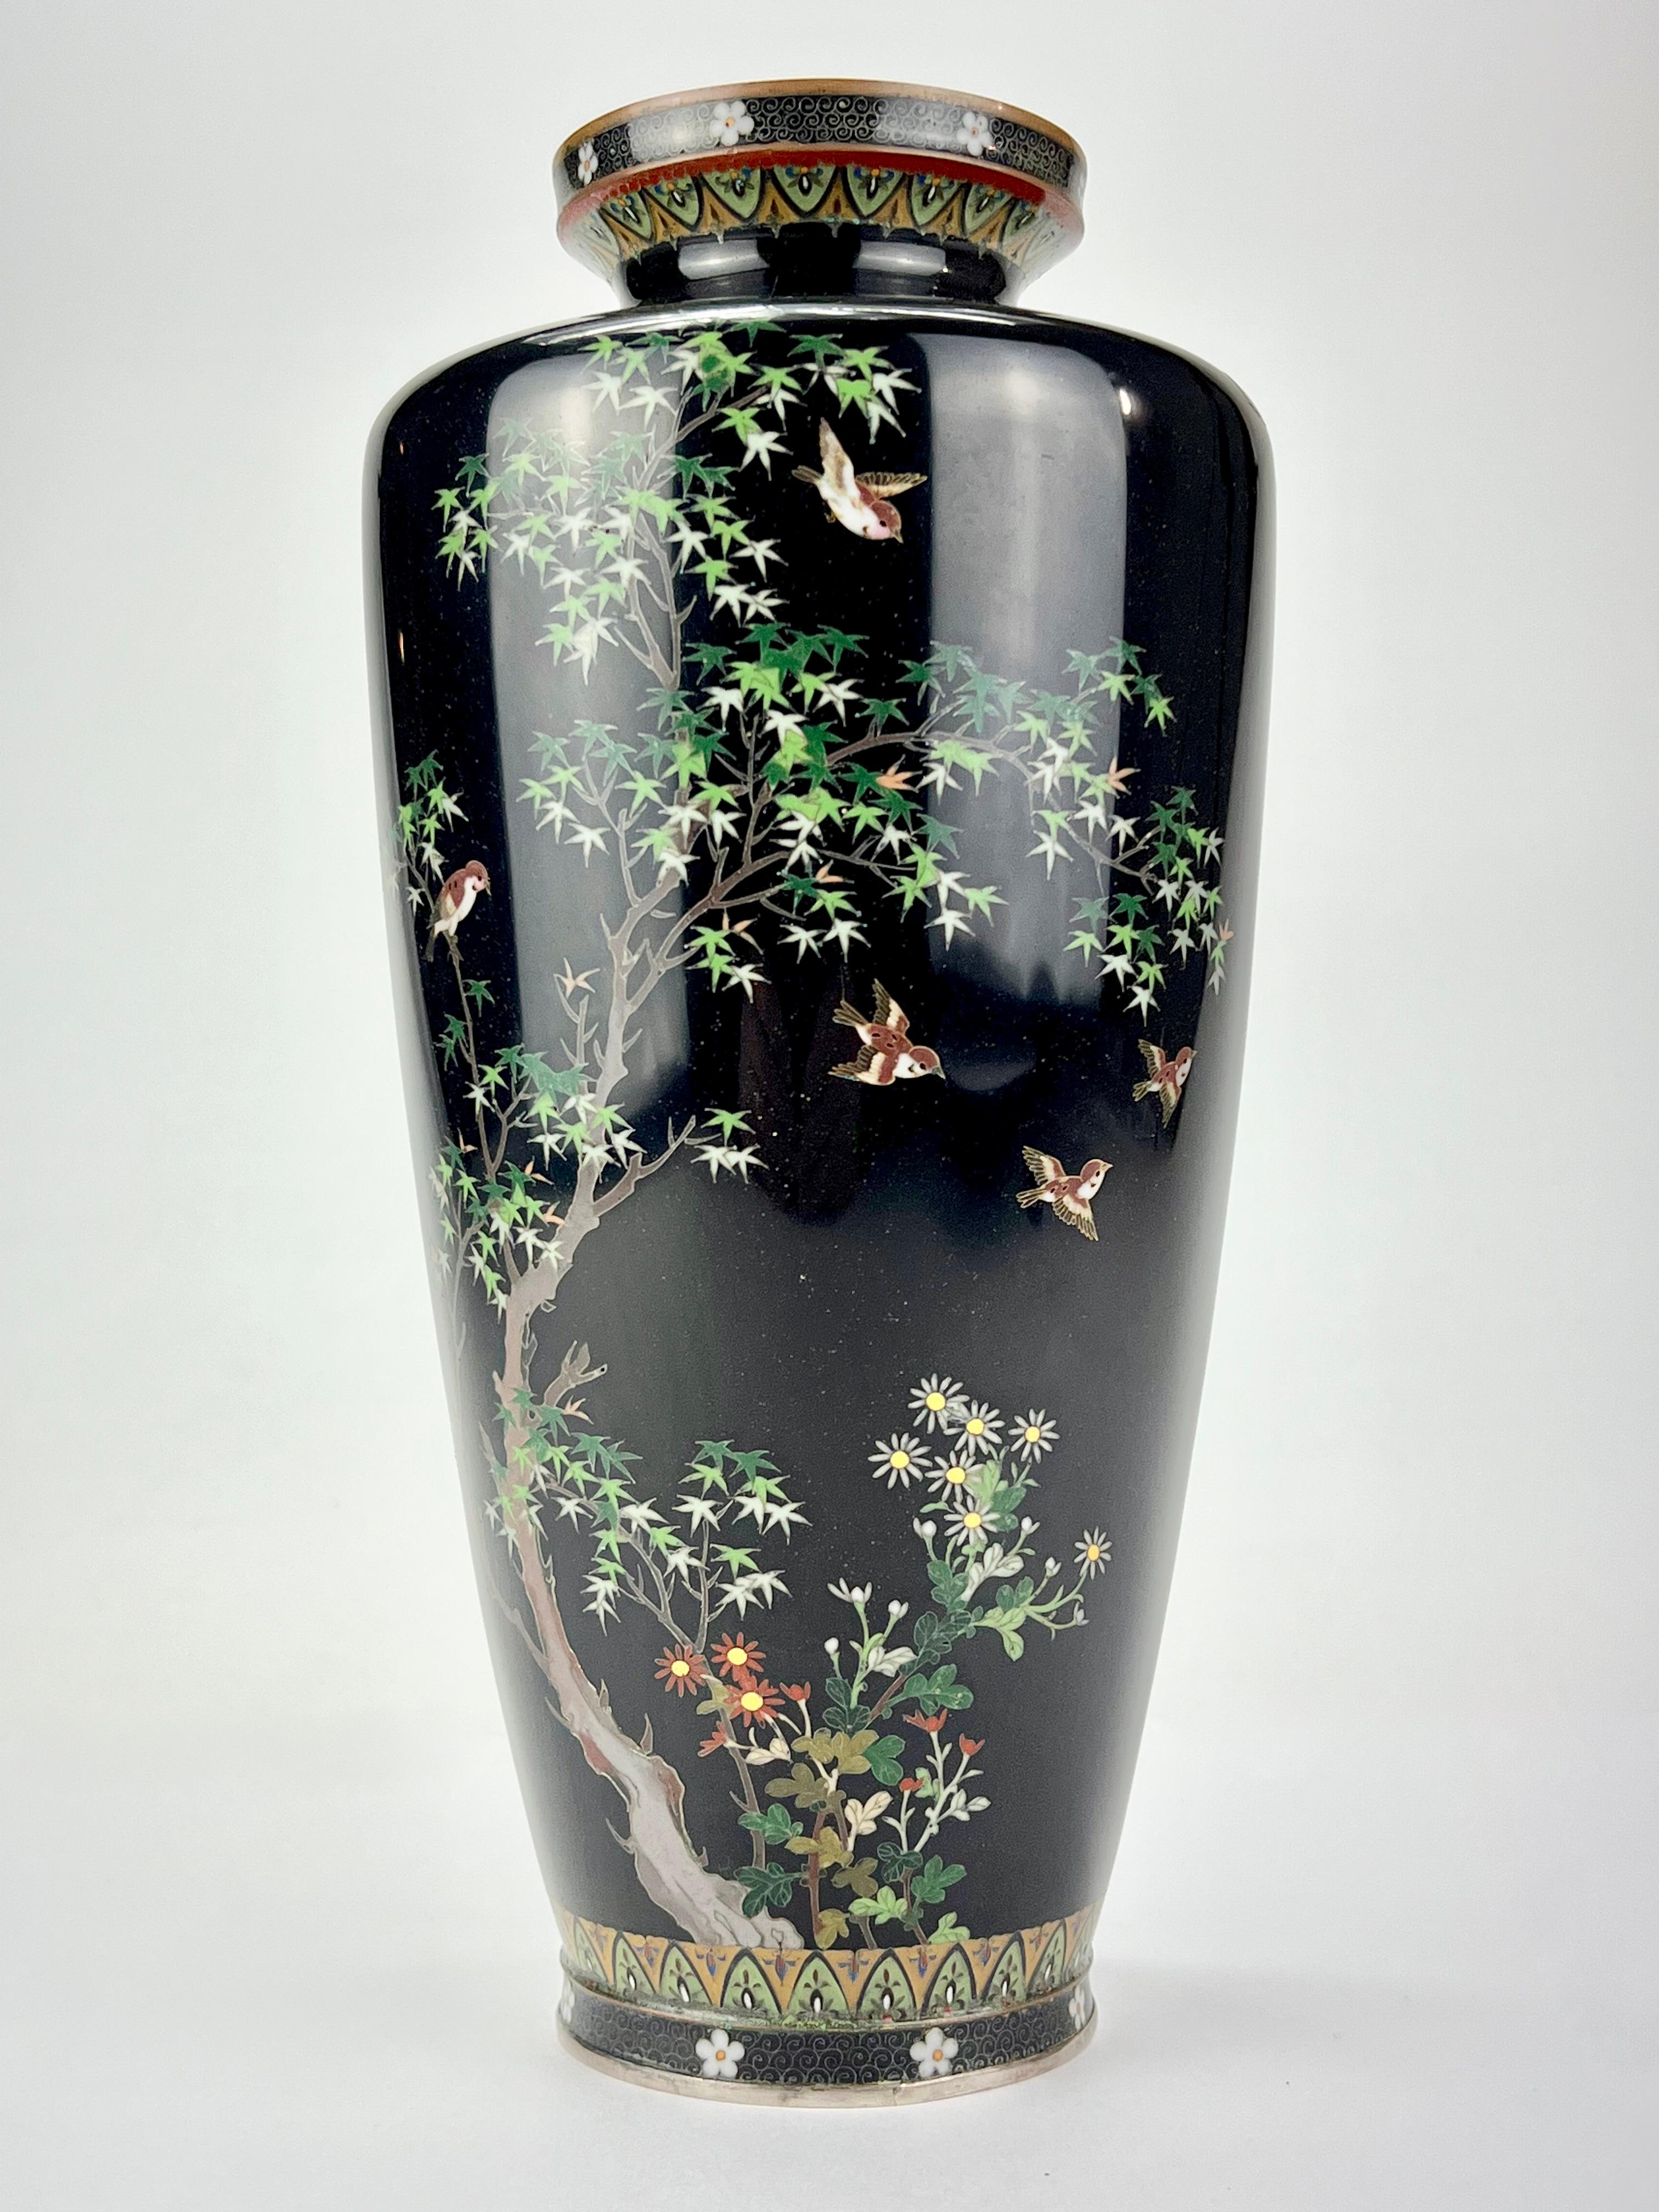 Disponible auprès de Shogun Art Gallery à Portland, Oregon, spécialisée depuis plus de 40 ans dans les arts et antiquités asiatiques.

Il s'agit d'un vase Cloisonné orné unique de l'ère Meiji (vers 1880) au Japon. Fabriqué en argent, alliages de